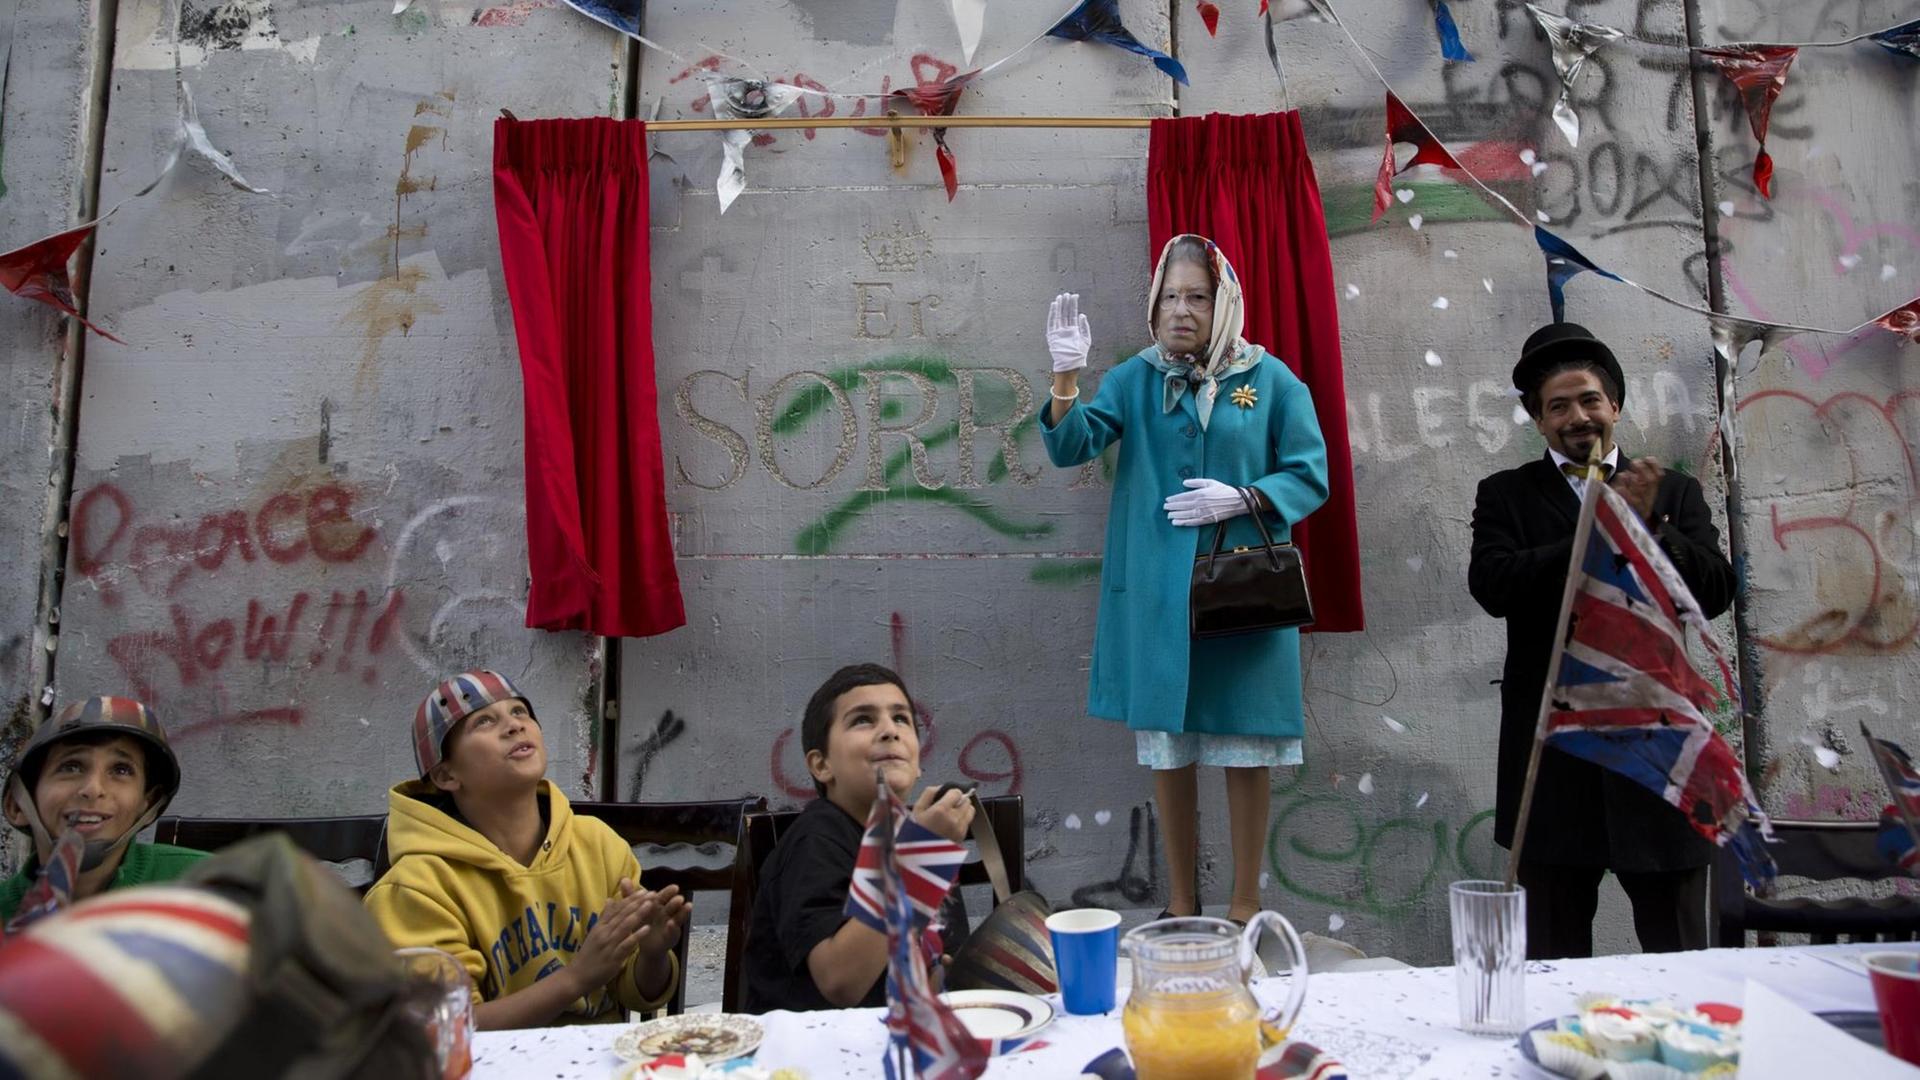 Kinder und eine als Königin Elizabeth verkleidete Person bei einem Event des britischen Künstlers Banksy.